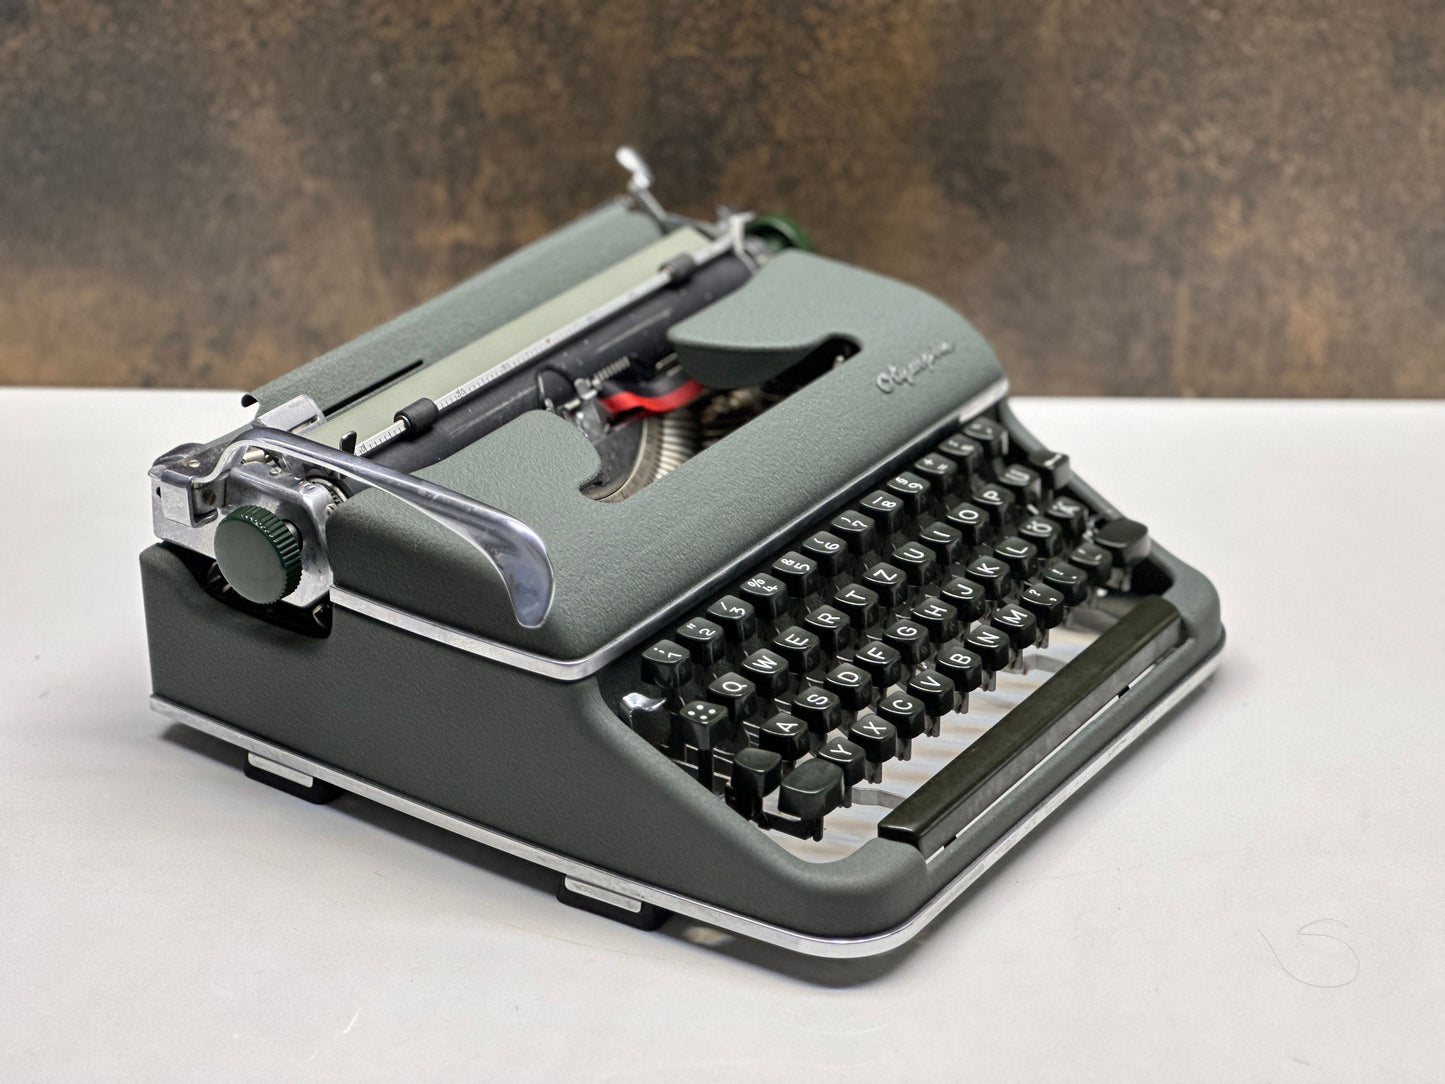 Olympia SM3 Typewriter - Special Typewriter Full Orginal - Premium Gift / Typewriter World | Typewriter like new| Typewriter Working Service